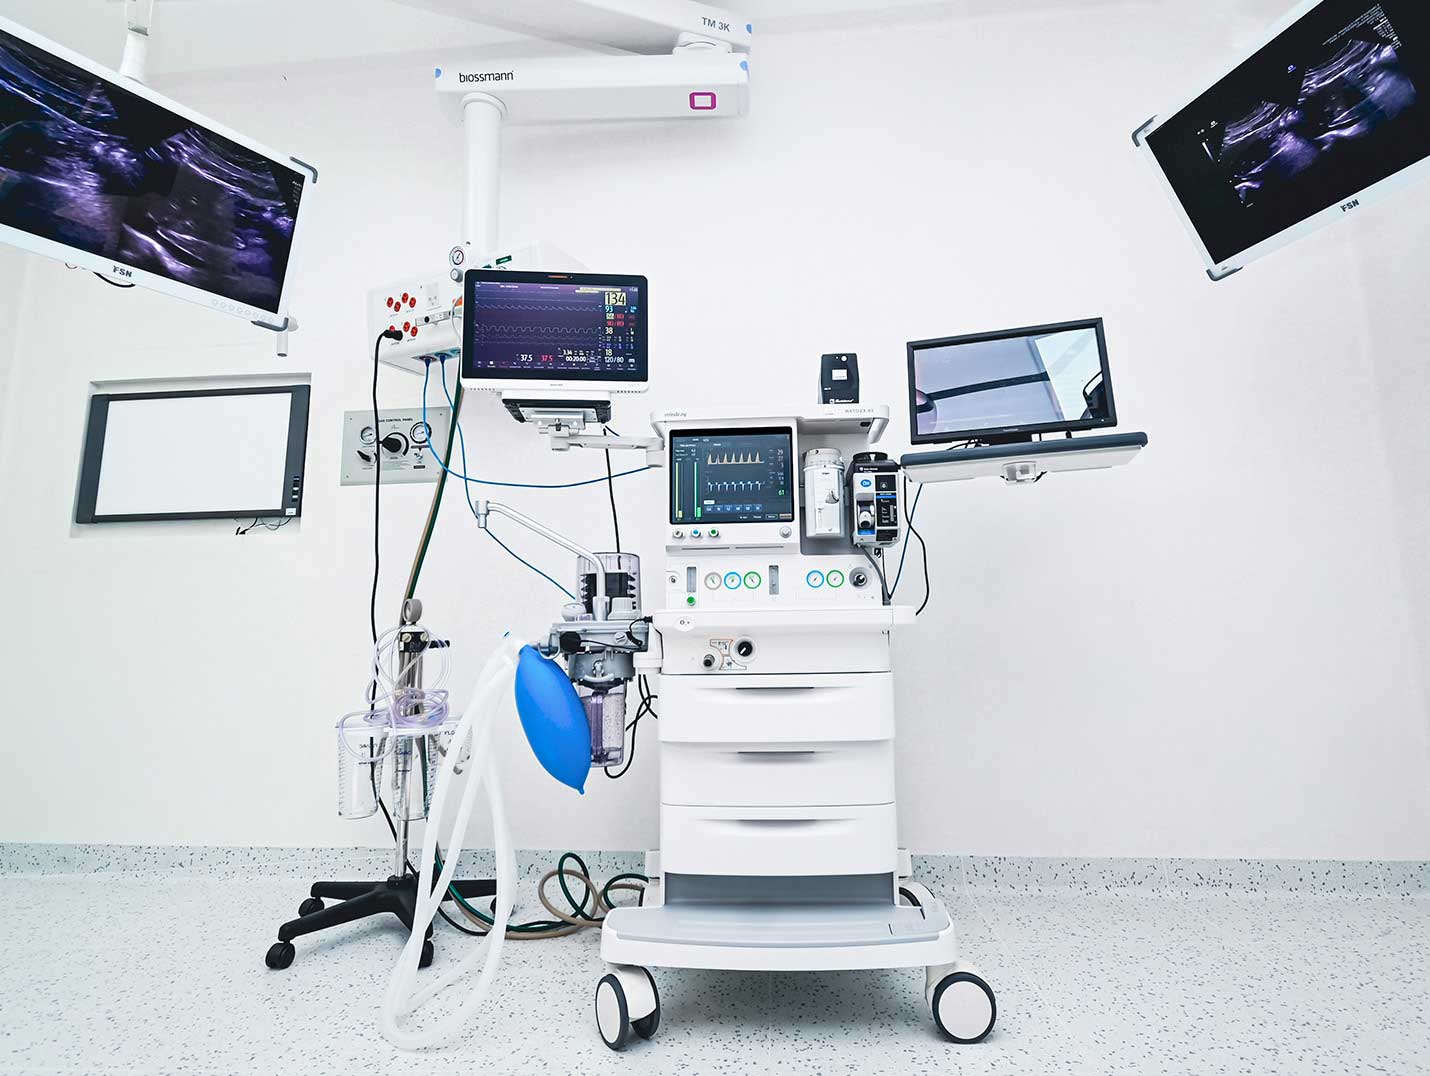 Equipo de anestesiología de ultima generación con pantallas encendidas dentro de un quirófano.